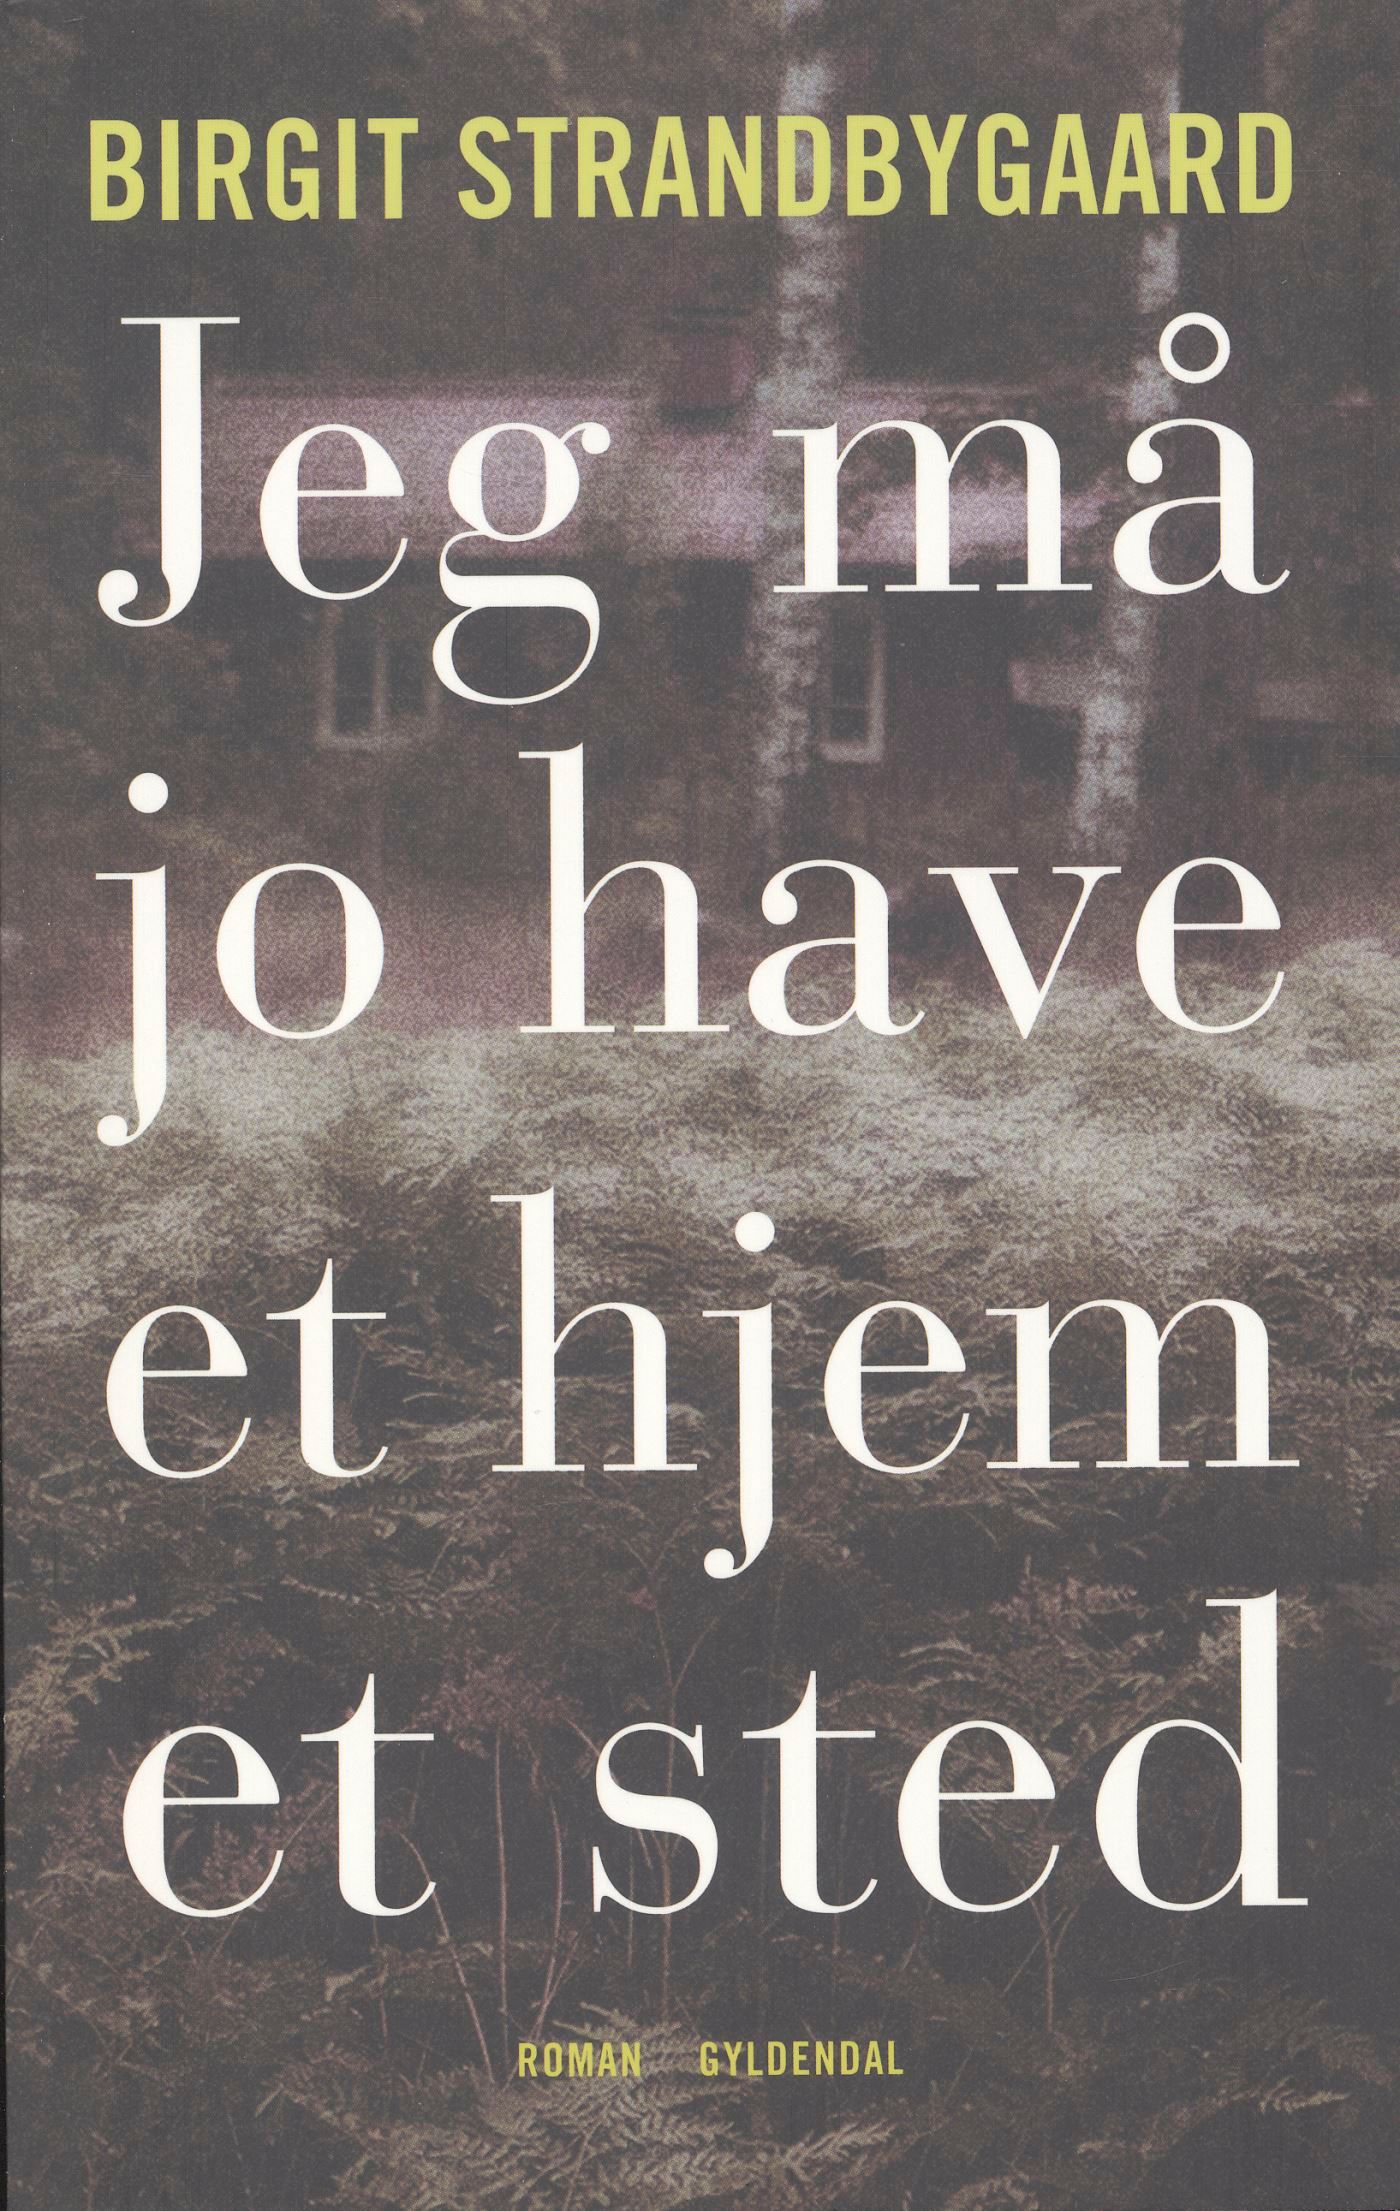 Jeg må jo have et hjem et sted, audiobook by Birgit Strandbygaard